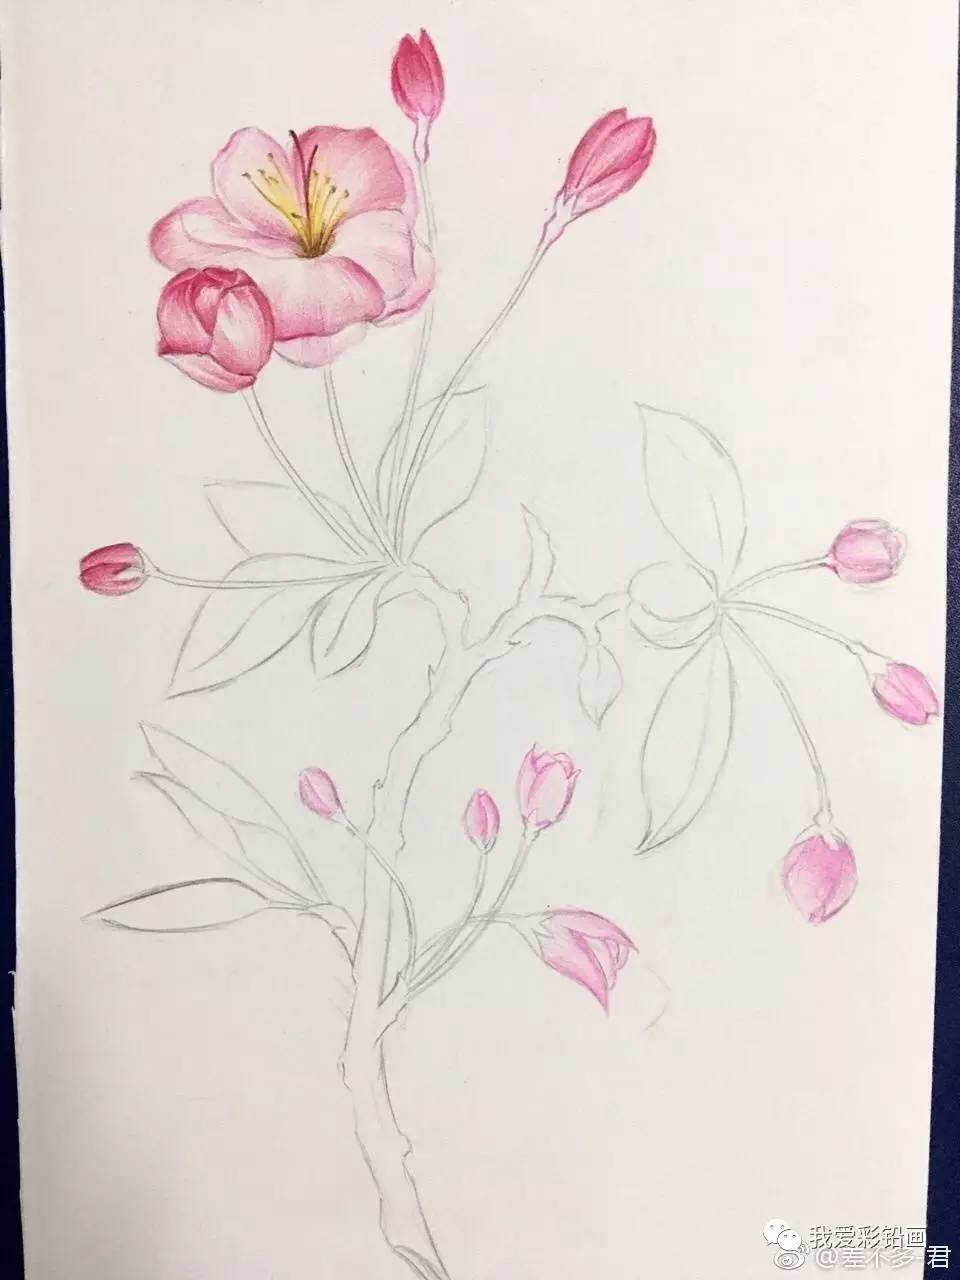 画出来的垂丝海棠花～是不是更美?